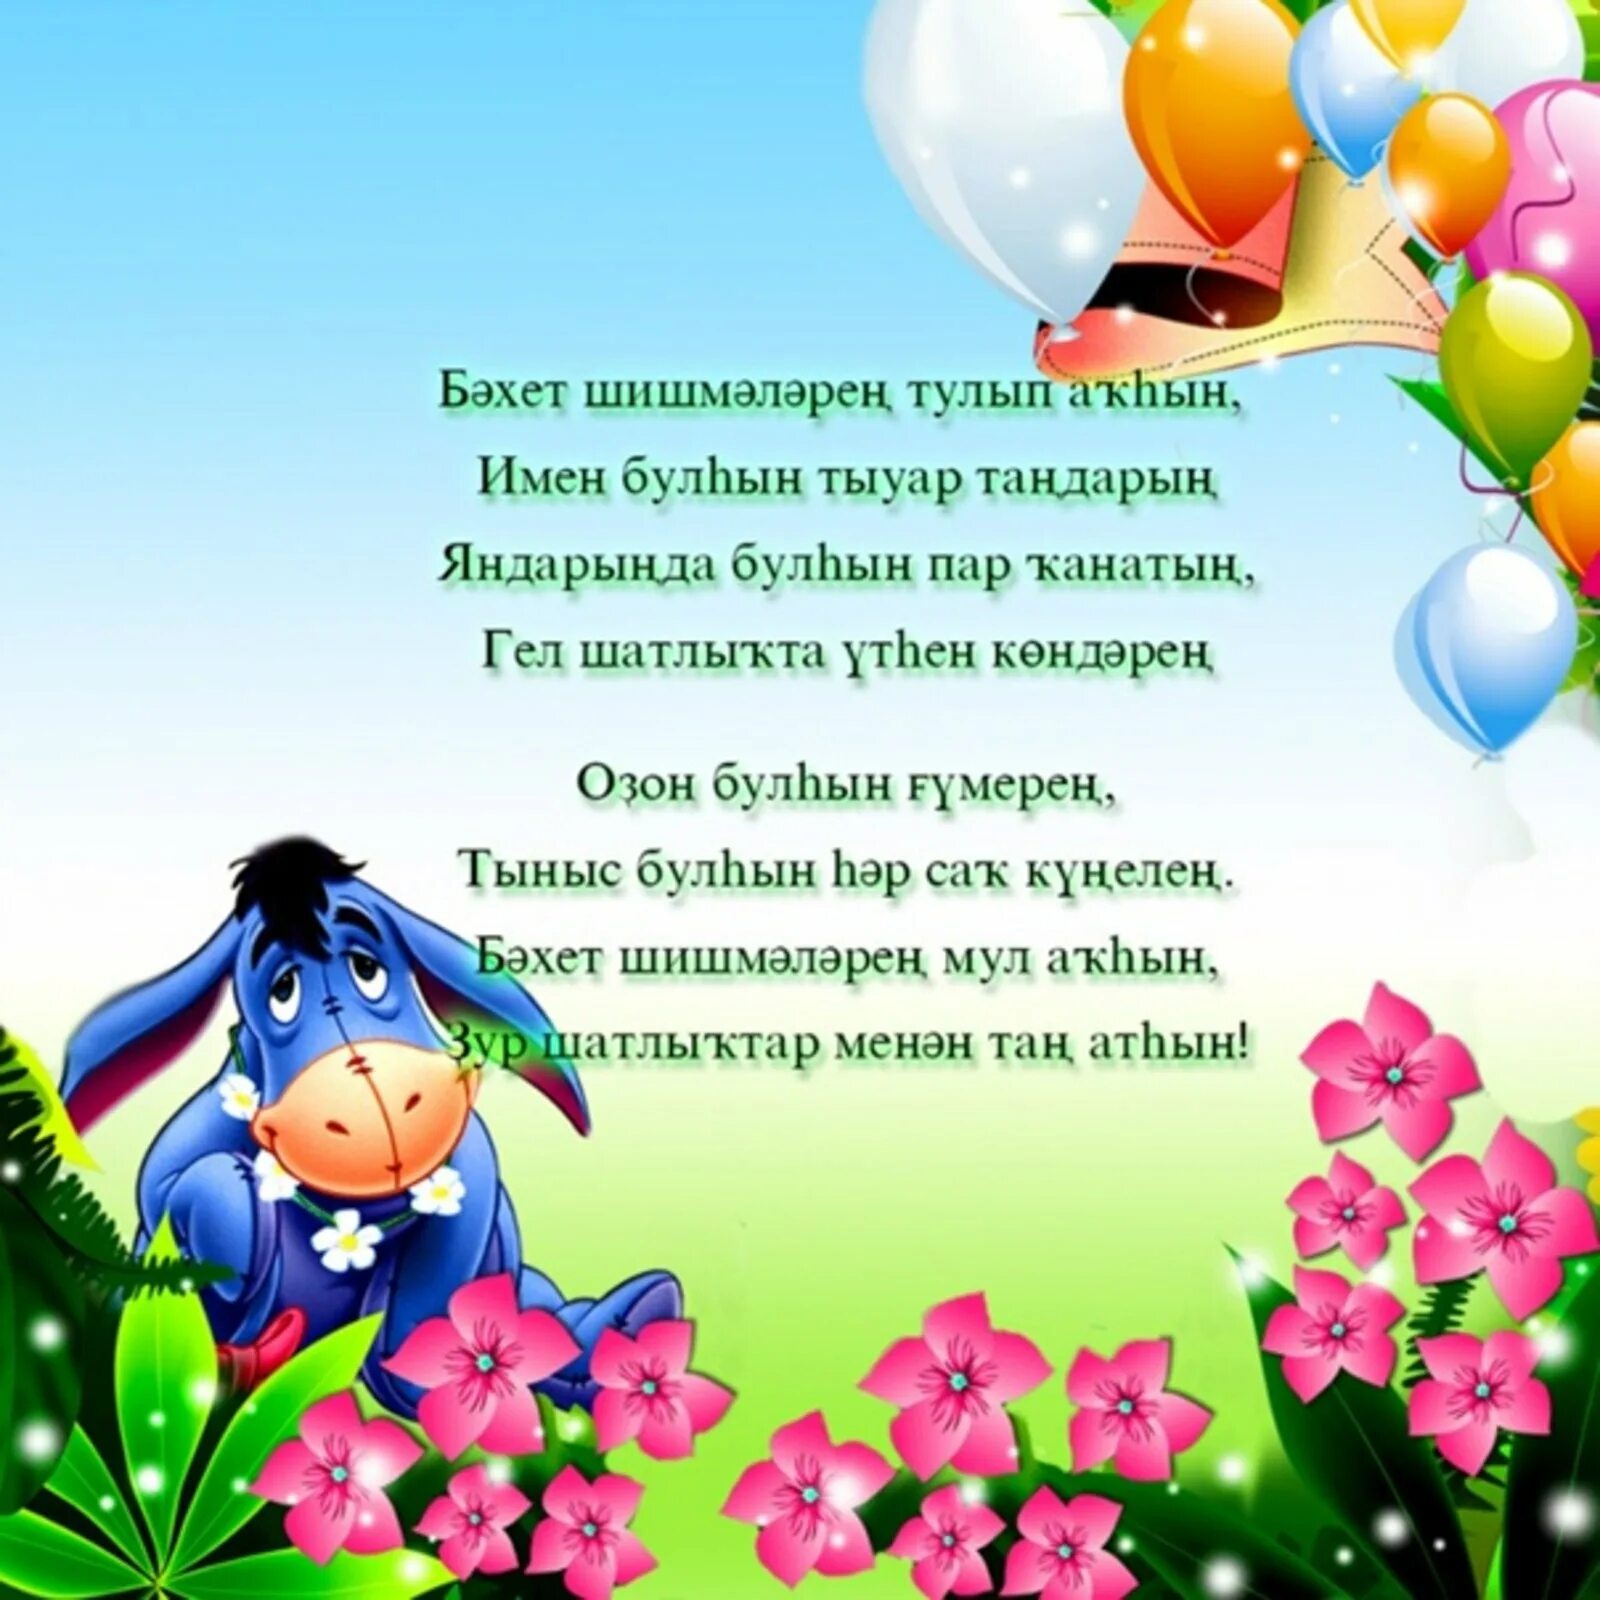 Открытка улыма. Поздравления с днём рождения на башкирском языке. Поздравления с днём рождения женщине на башкирском языке. Открытки с днём рождения на башкирском. Открытки на башкирском языке.